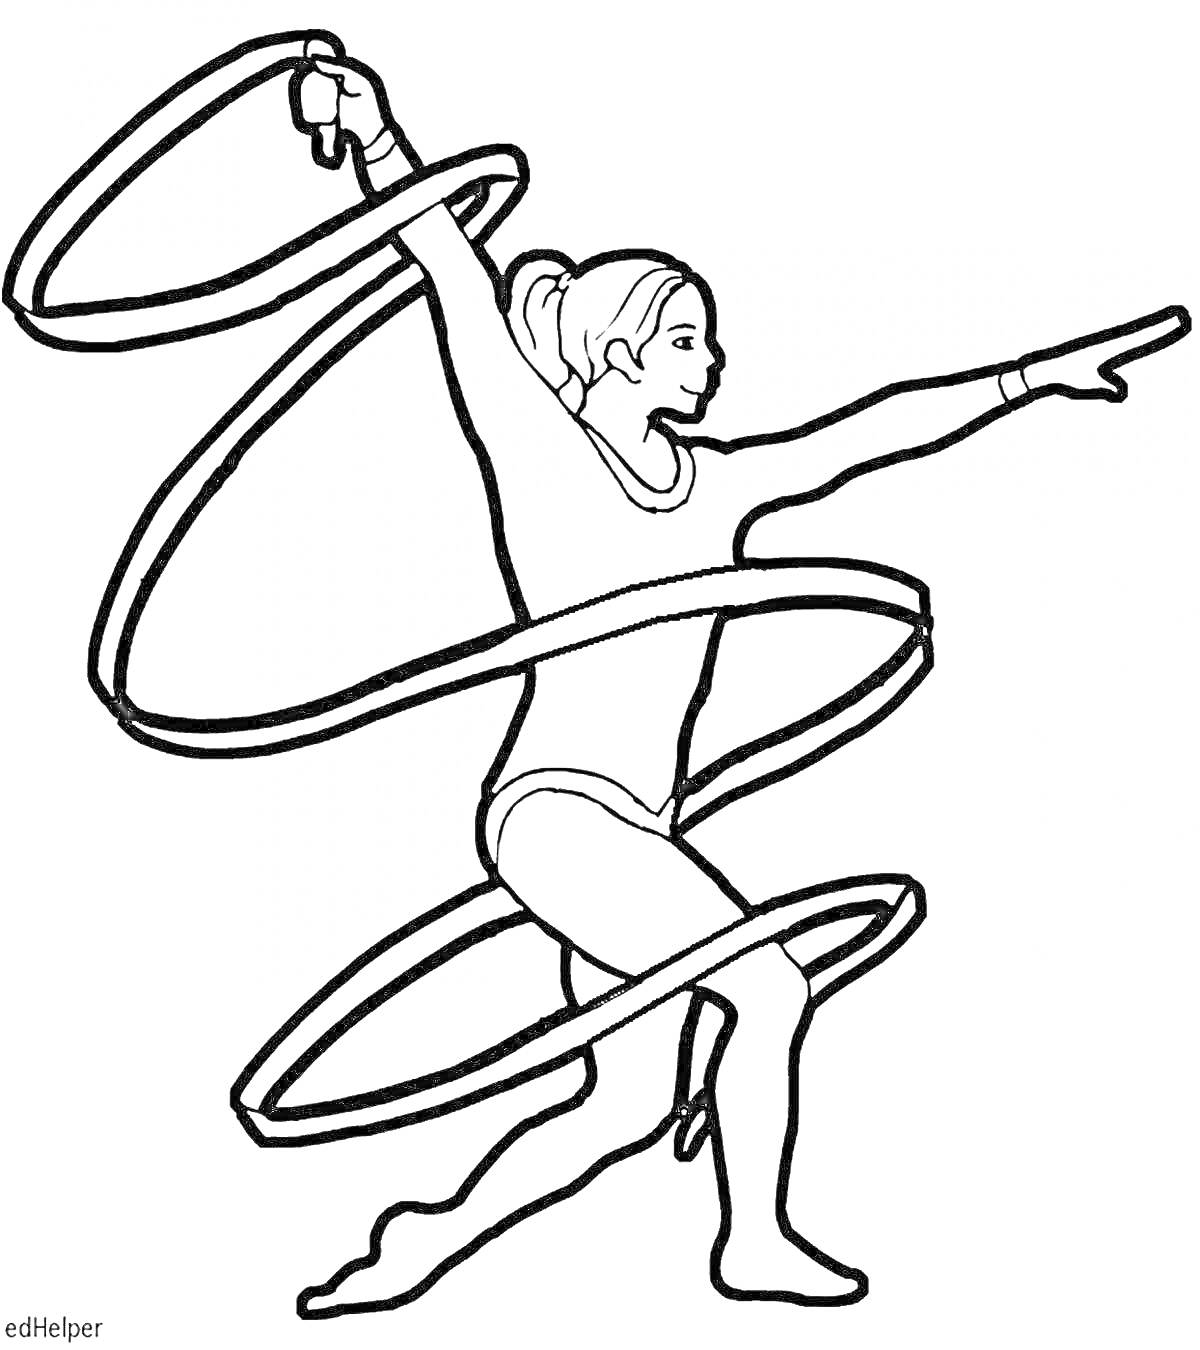 Художественная гимнастика с лентой, гимнастка в позе с поднятой рукой и ленточкой, закрученной вокруг её тела